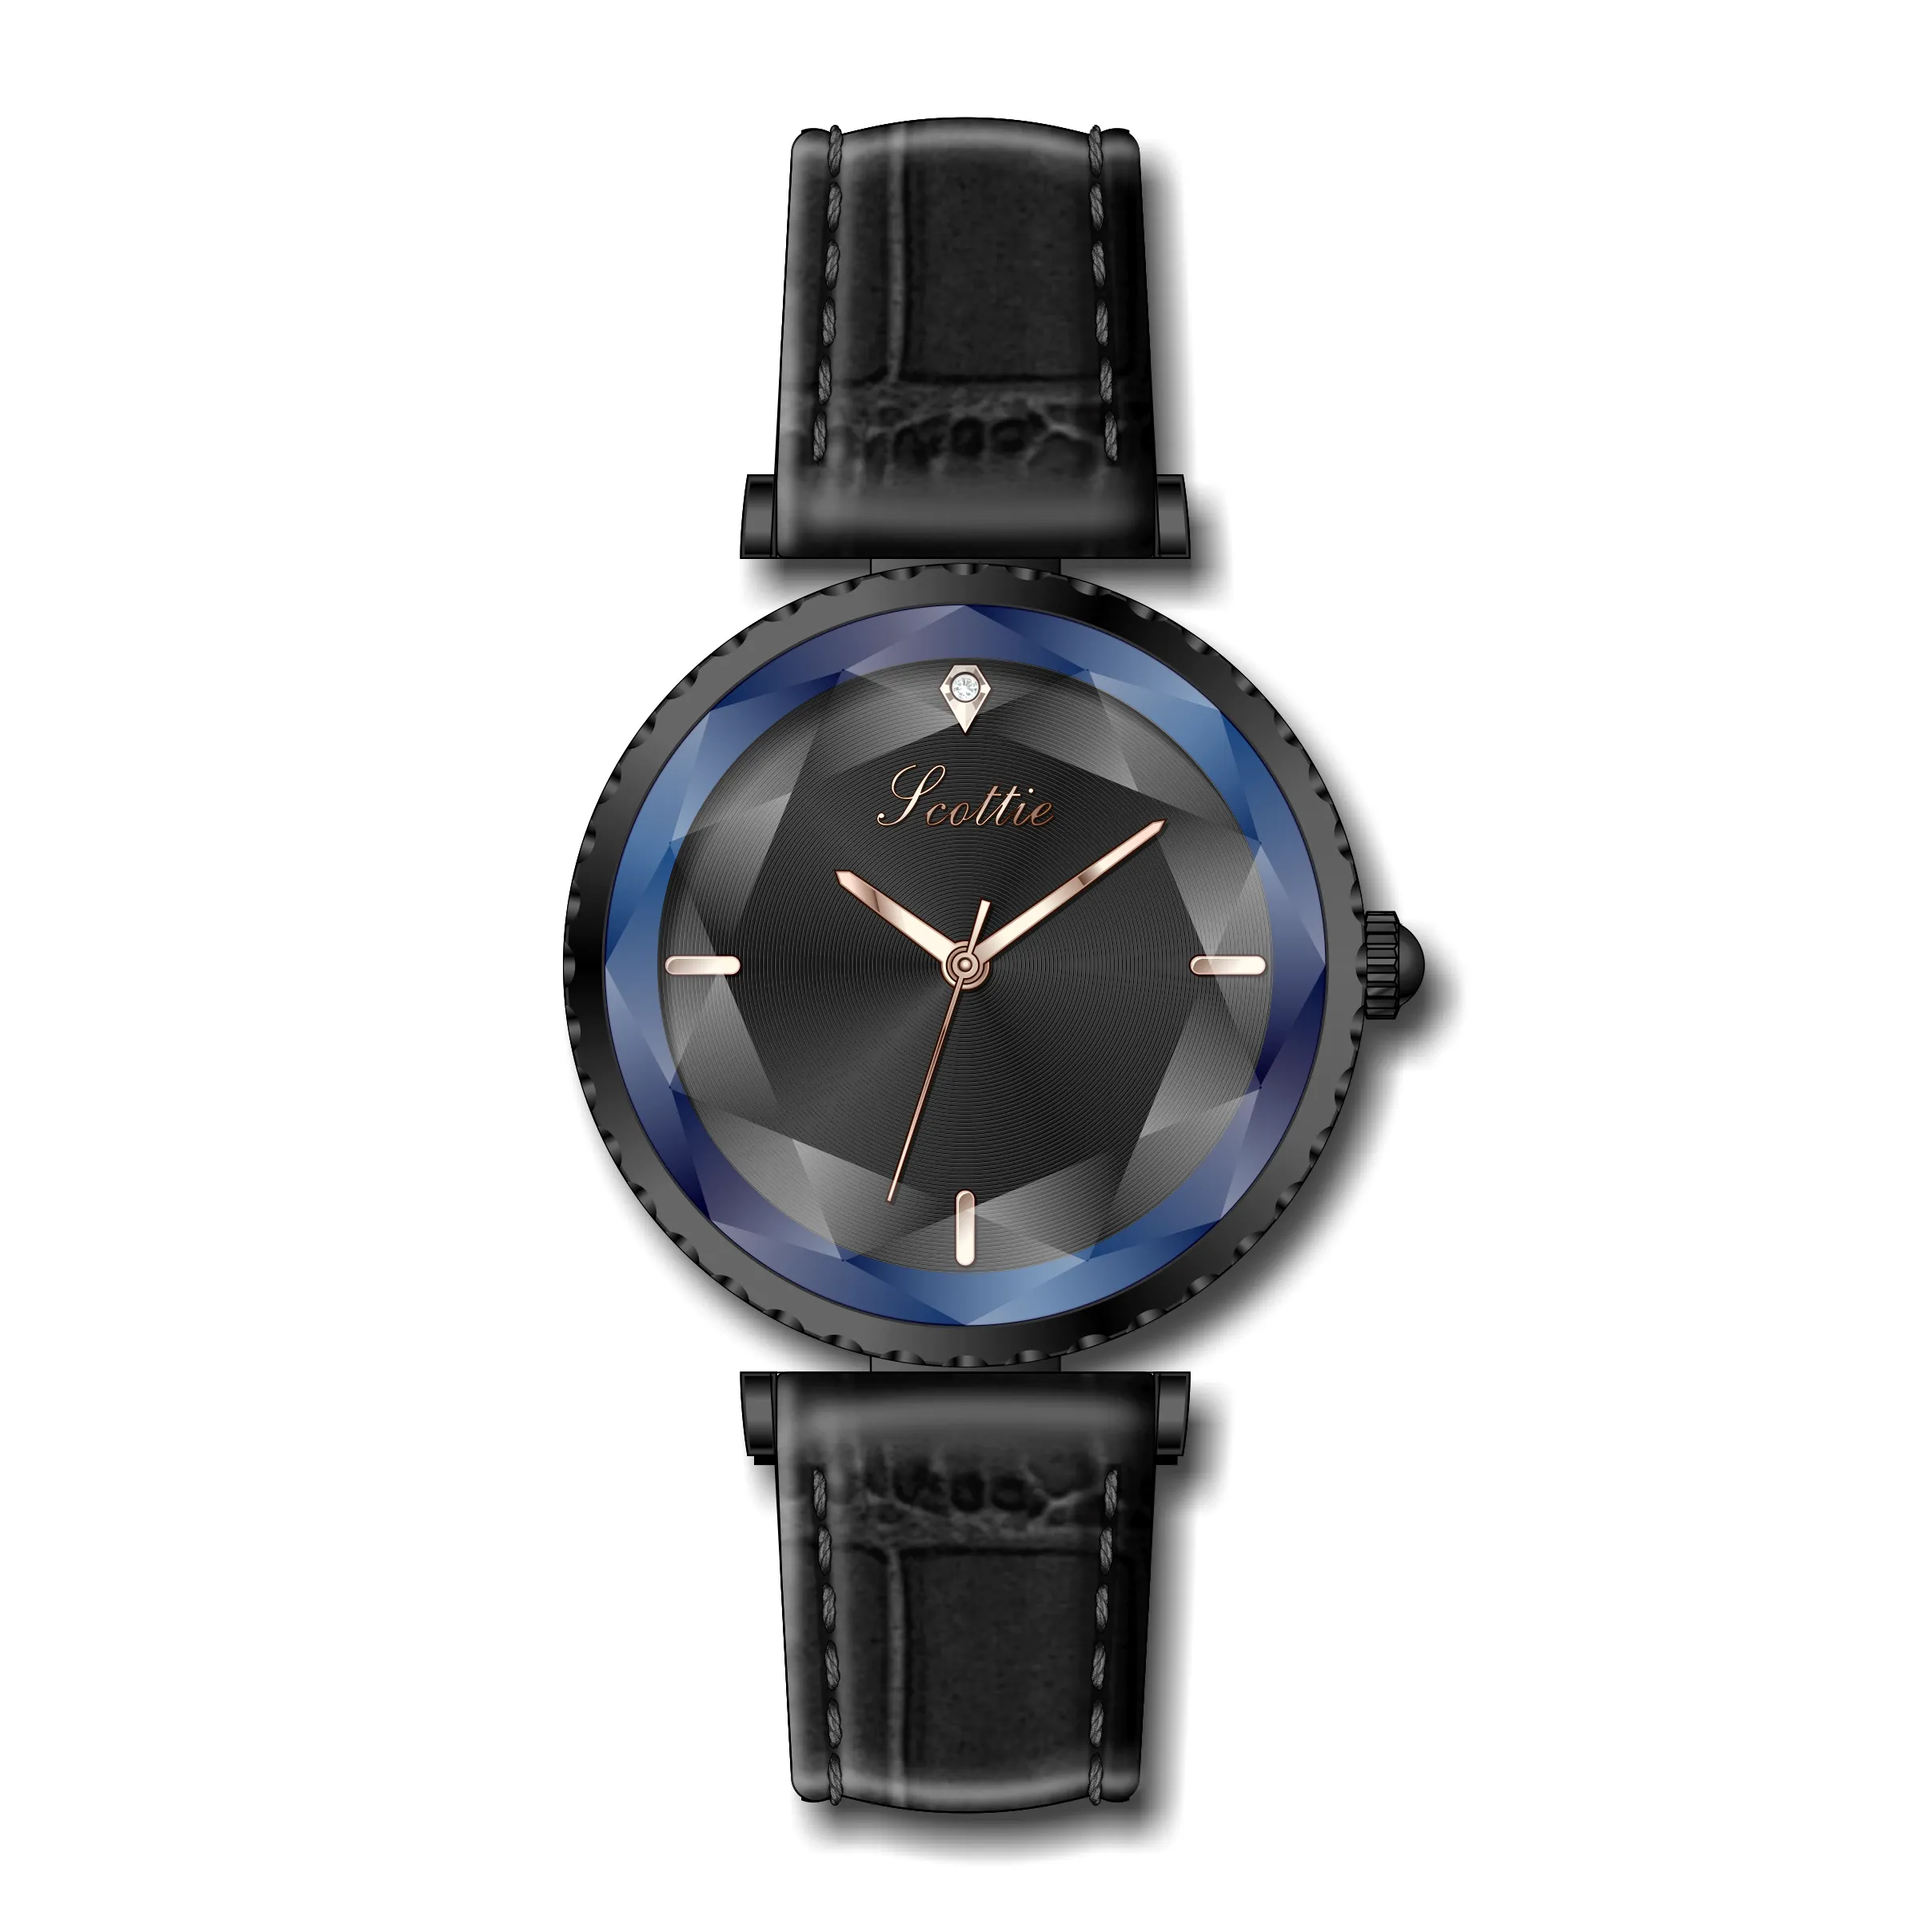 Luxe Rose Goud Vrouwen Horloges 2019 Mode Echt Leer Kwaliteit Japan Movt Waterdicht Vrouwelijke Horloge Voor Gift Clock241Q